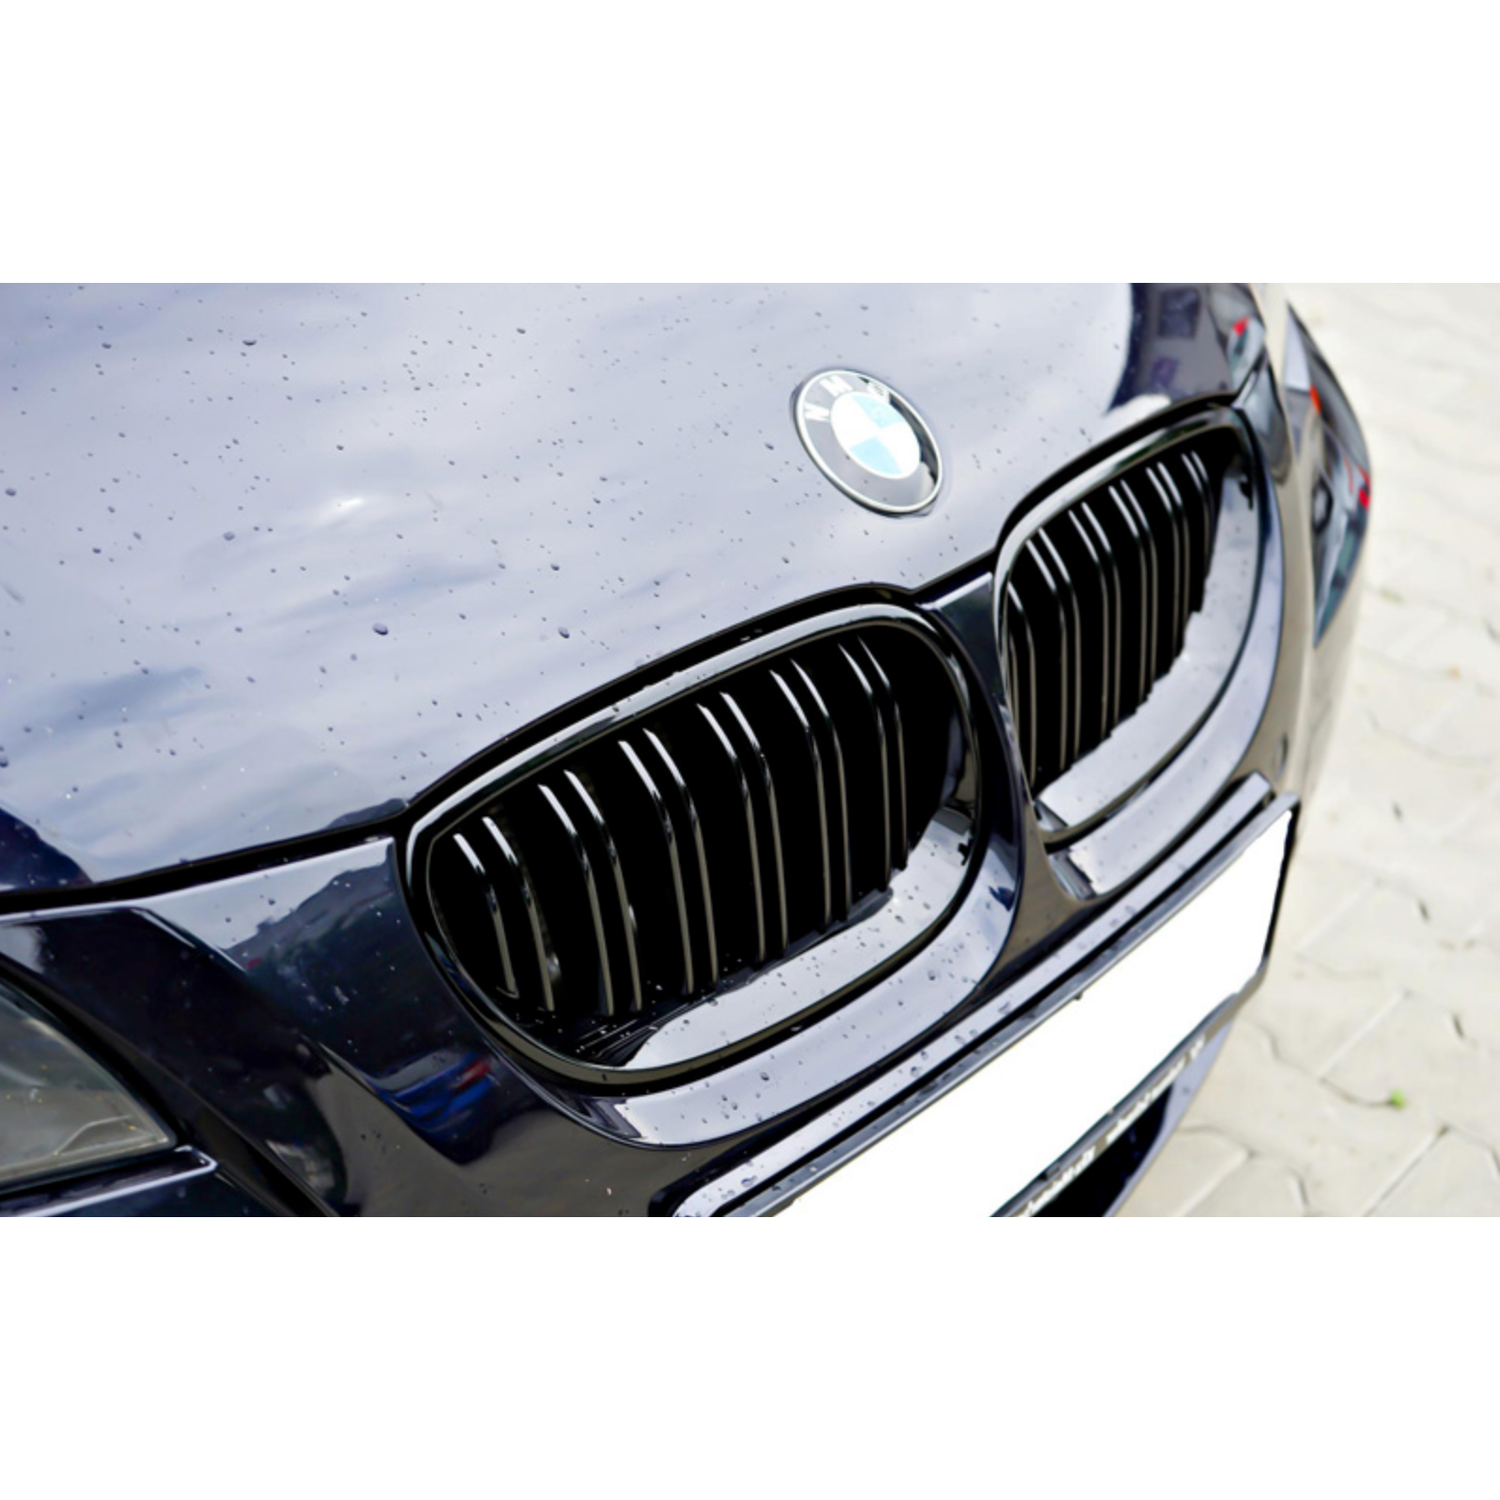 BMW E60/61 frontgrill nyrer - Sort højglans - Komplet sæt - BilligStyling